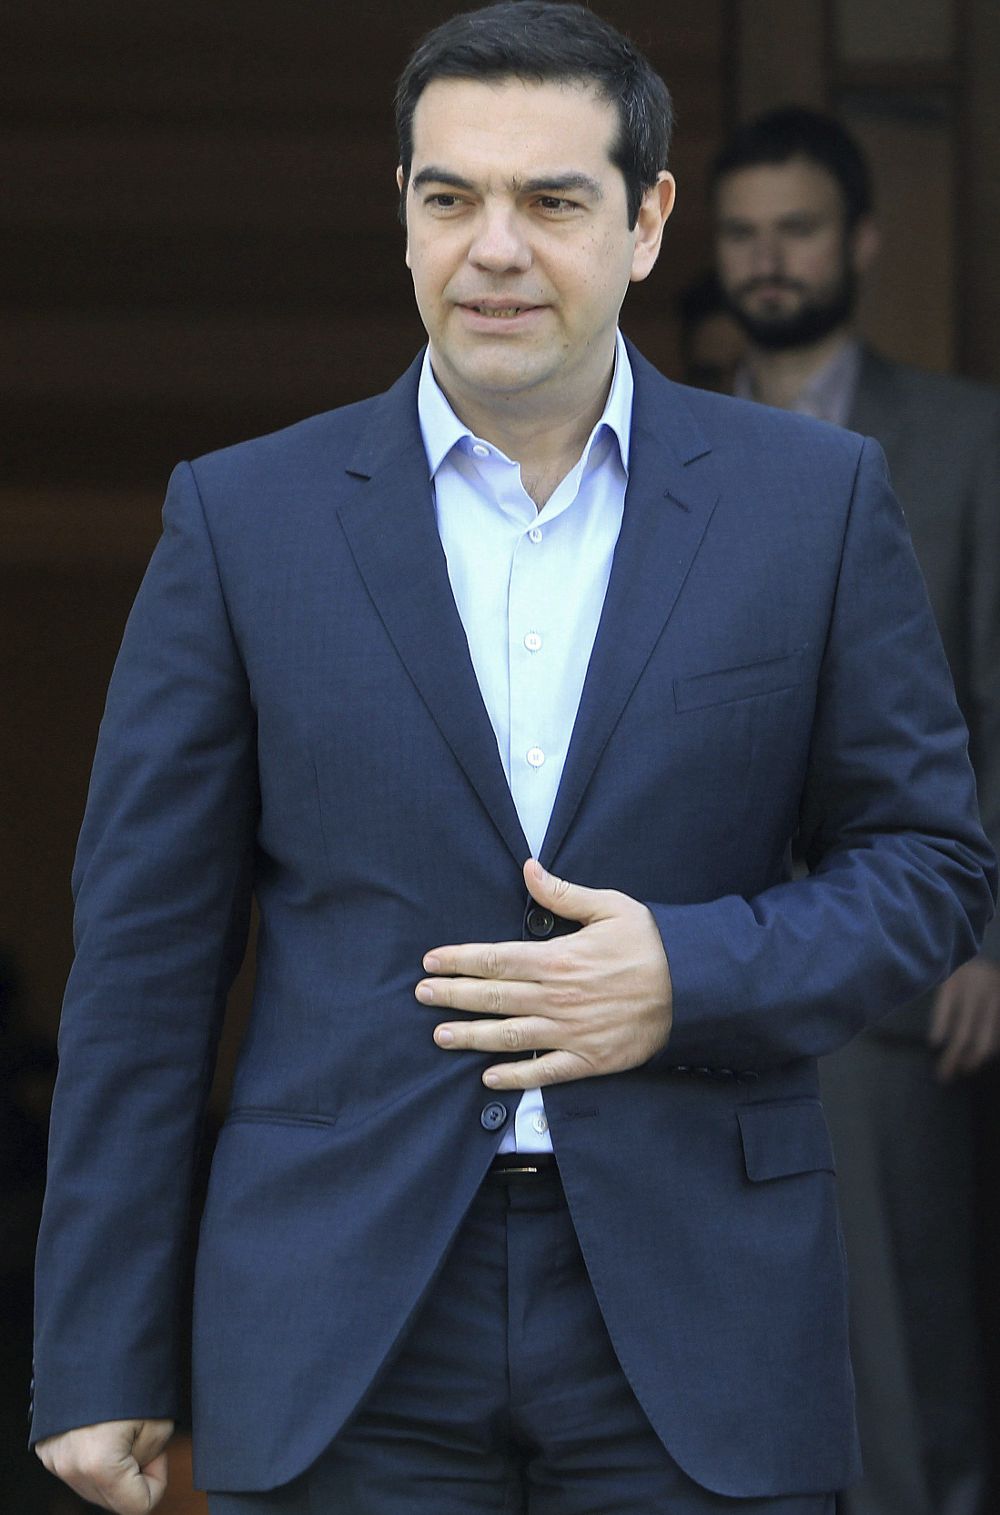 El primer ministro griego, Alexis Tsipras (c), espera la llegada del presidente de Chipre, Nikos Anastasiadis, antes de su reunión en Atenas,el viernes.